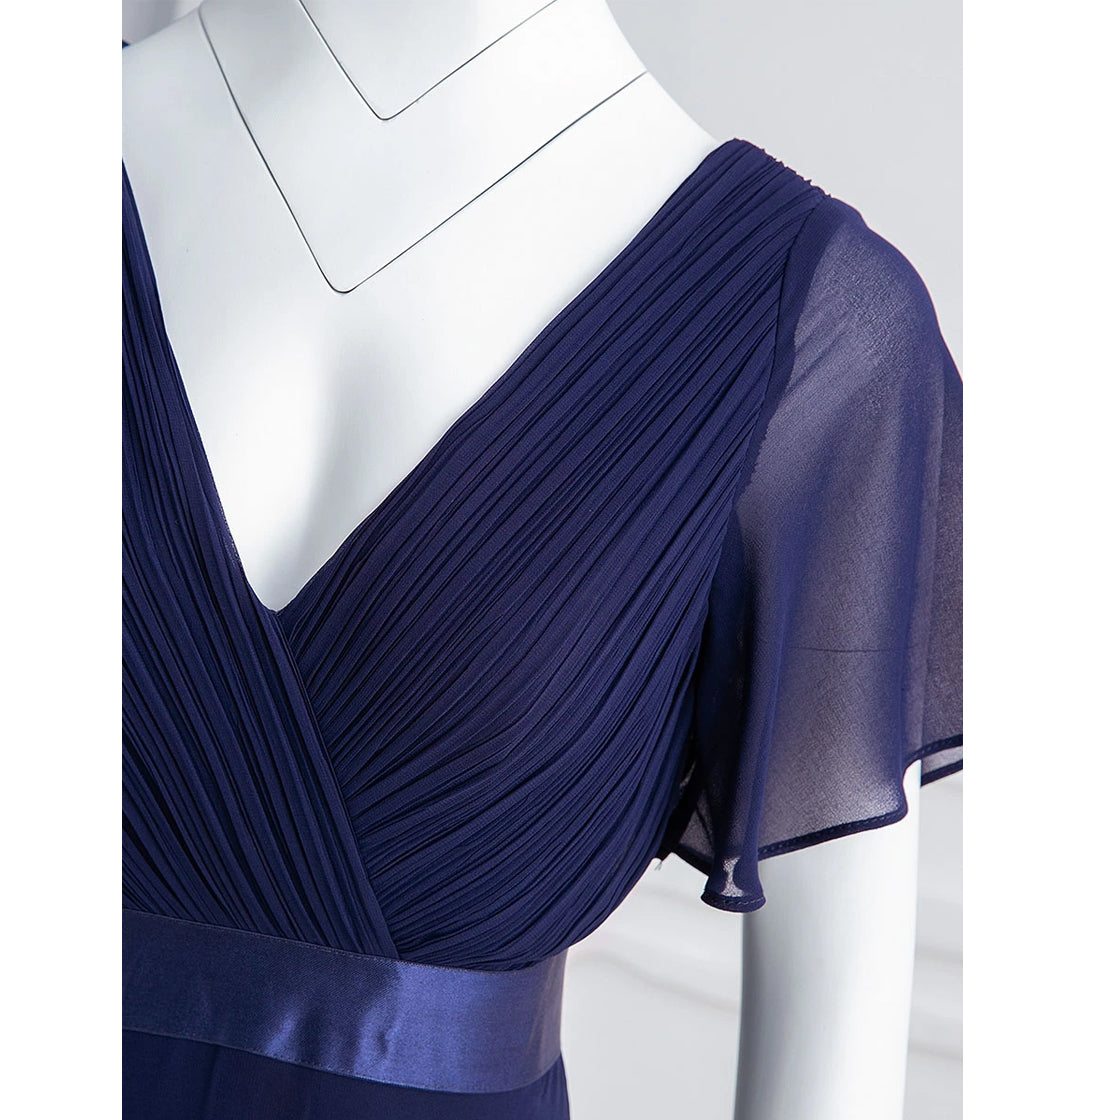 Κοντομάνικο μακρύ μπλε φόρεμα TANYA NAVY (ΝΟΥΜΕΡΑ ΜΕΧΡΙ 7XL) - Amely.gr - Γυναικεία ρούχα - Φορέματα, ολόσωμες φόρμες